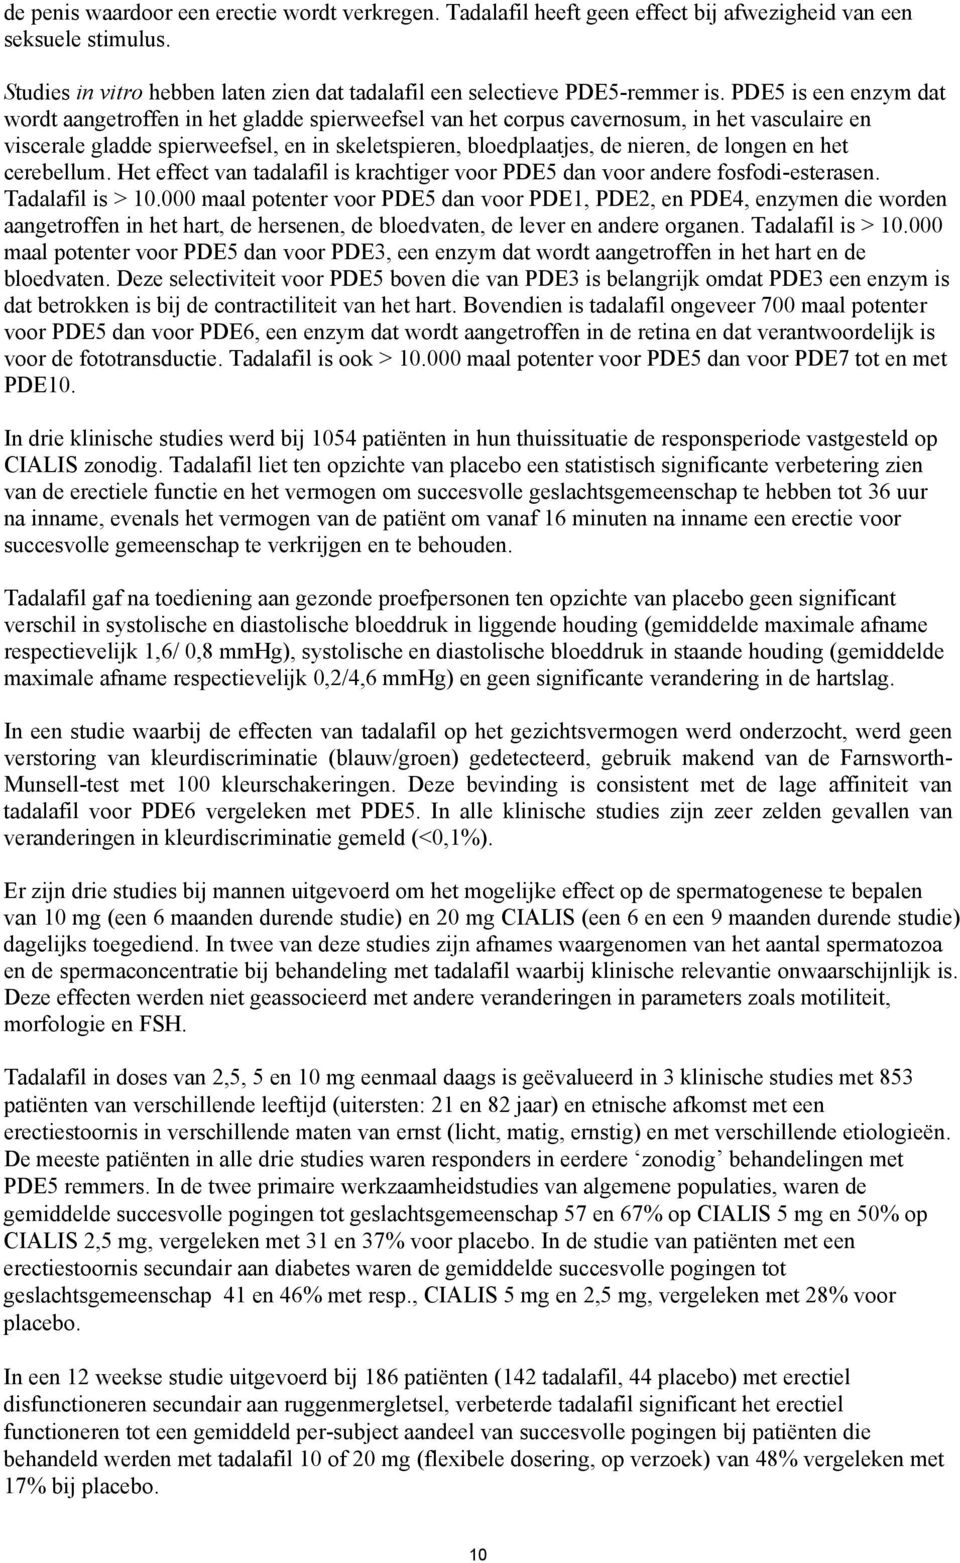 longen en het cerebellum. Het effect van tadalafil is krachtiger voor PDE5 dan voor andere fosfodi-esterasen. Tadalafil is > 10.